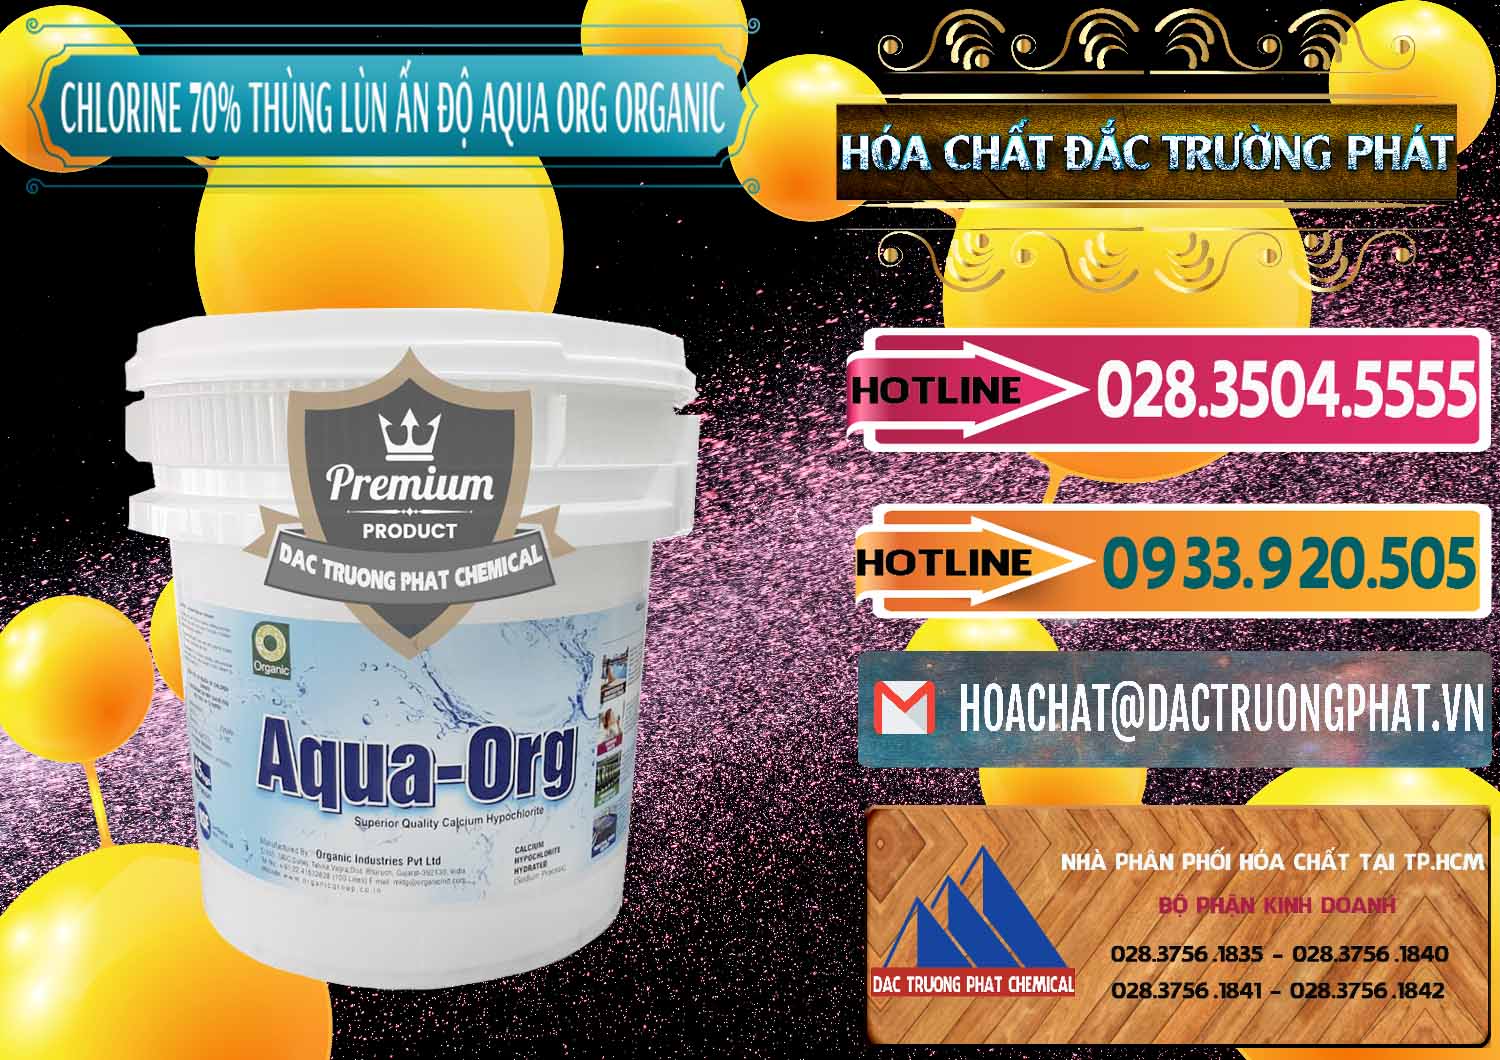 Nơi chuyên phân phối _ bán Chlorine – Clorin 70% Thùng Lùn Ấn Độ Aqua ORG Organic India - 0212 - Công ty chuyên cung cấp - kinh doanh hóa chất tại TP.HCM - dactruongphat.vn